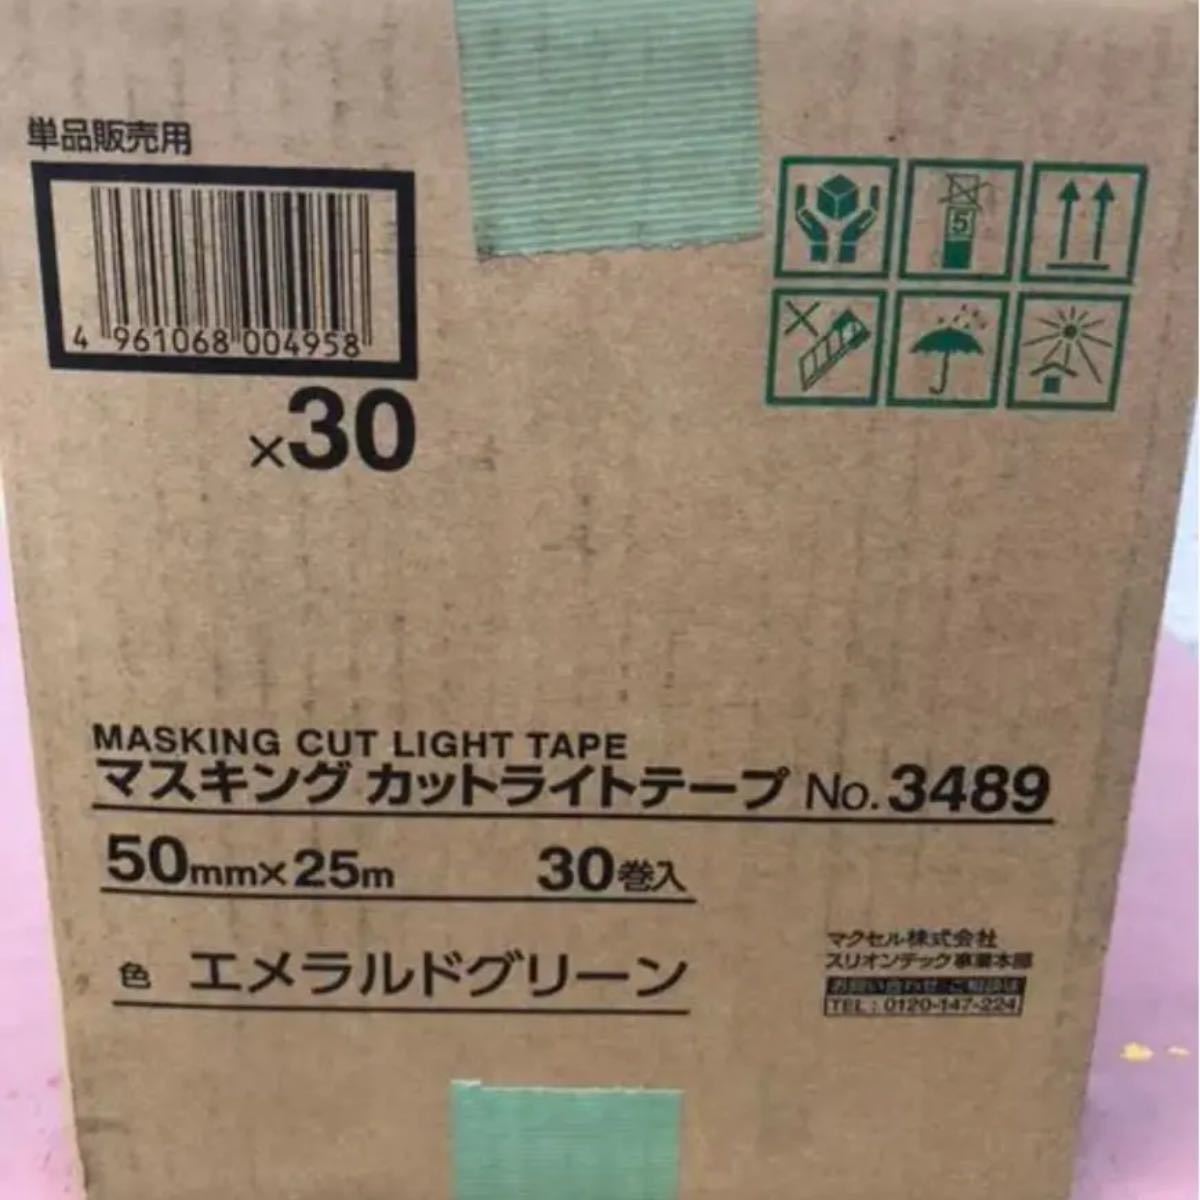 WEB限定 スリオンテック 養生用マスキングカットライトテープ 50mm×25m No.3489